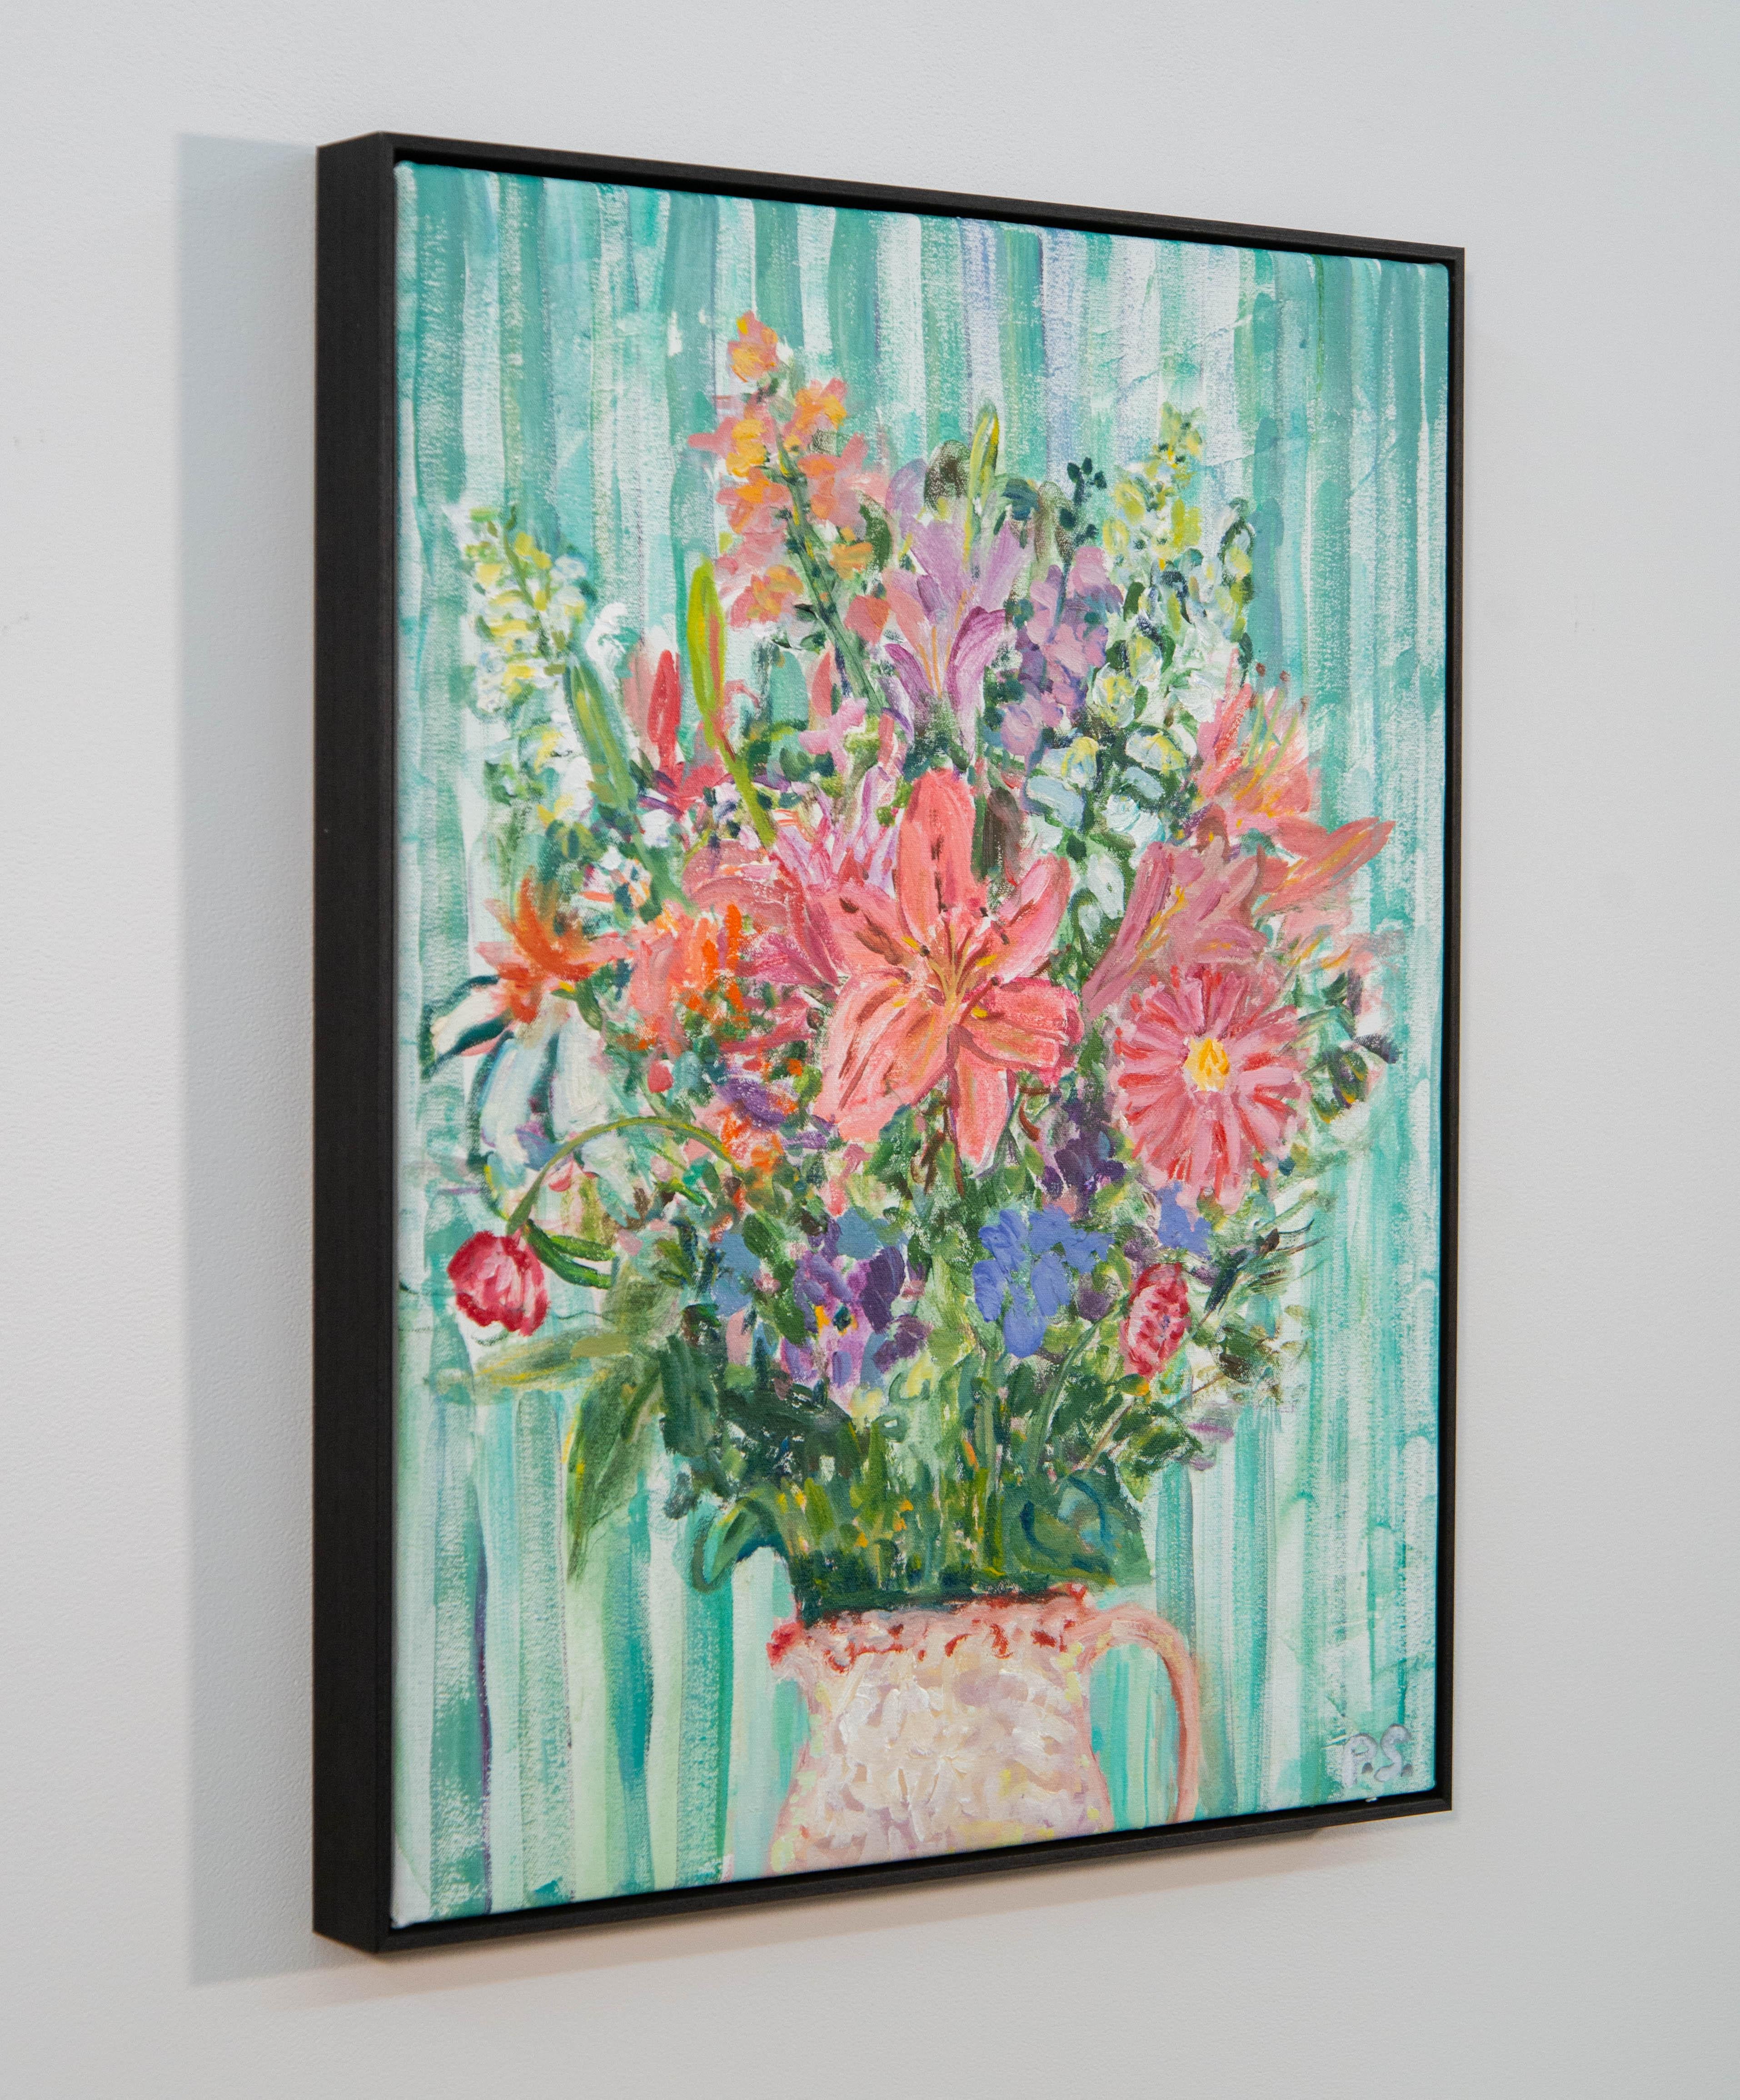 Un joli bouquet de fleurs mélangées remplit la toile de couleurs joyeuses dans cette nature morte peinte par Pat Service. L'artiste canadienne a exploré la forme d'art traditionnelle dans les années 1990, mais à sa manière, magistrale et unique. La